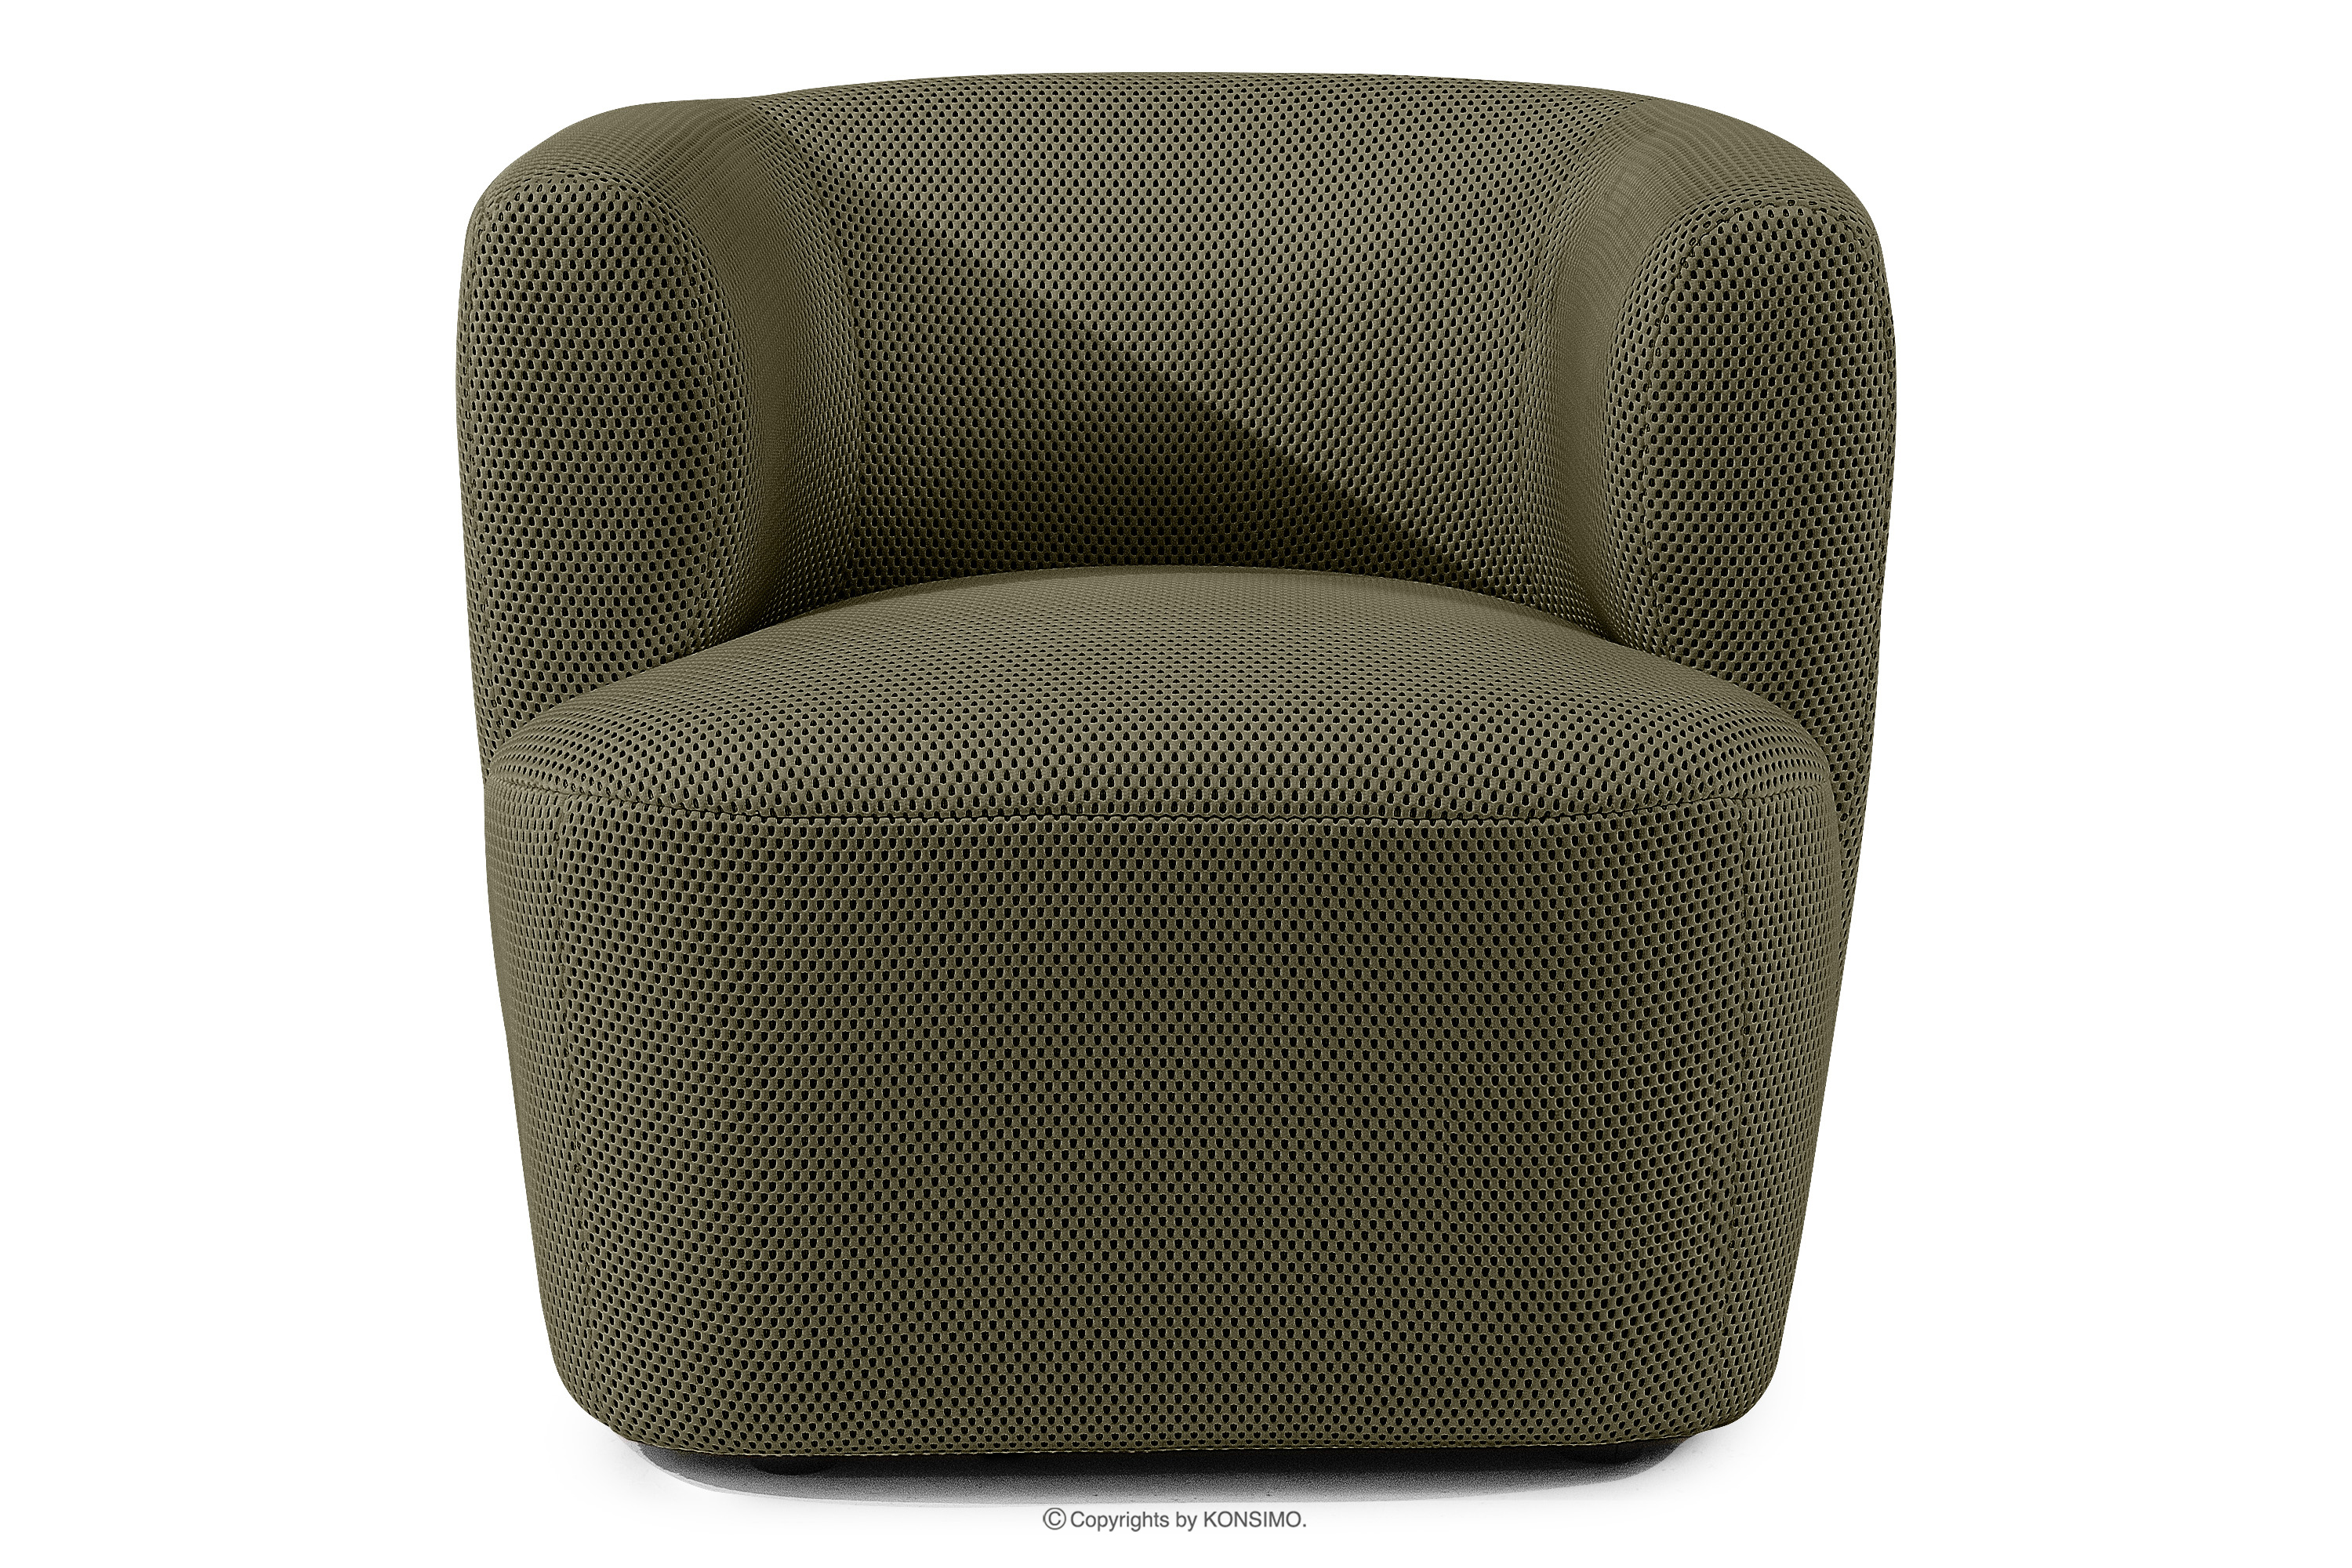 Nowoczesny fotel w tkaninie trójwymiarowej ciemny zielony